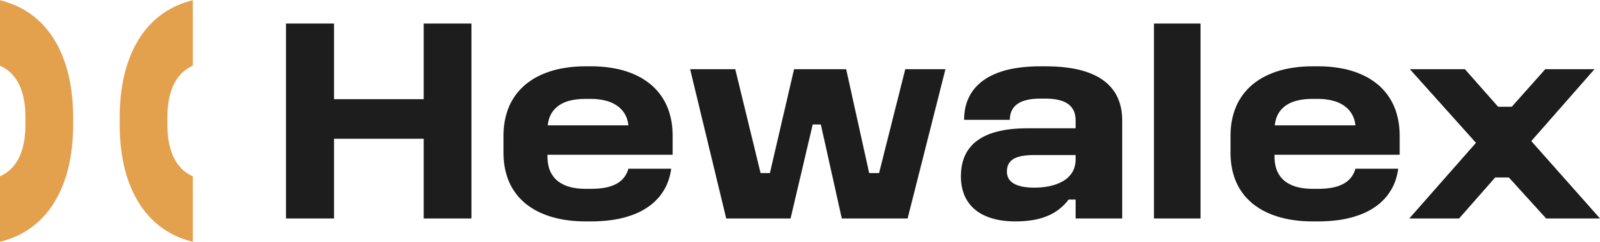 hawelax logo